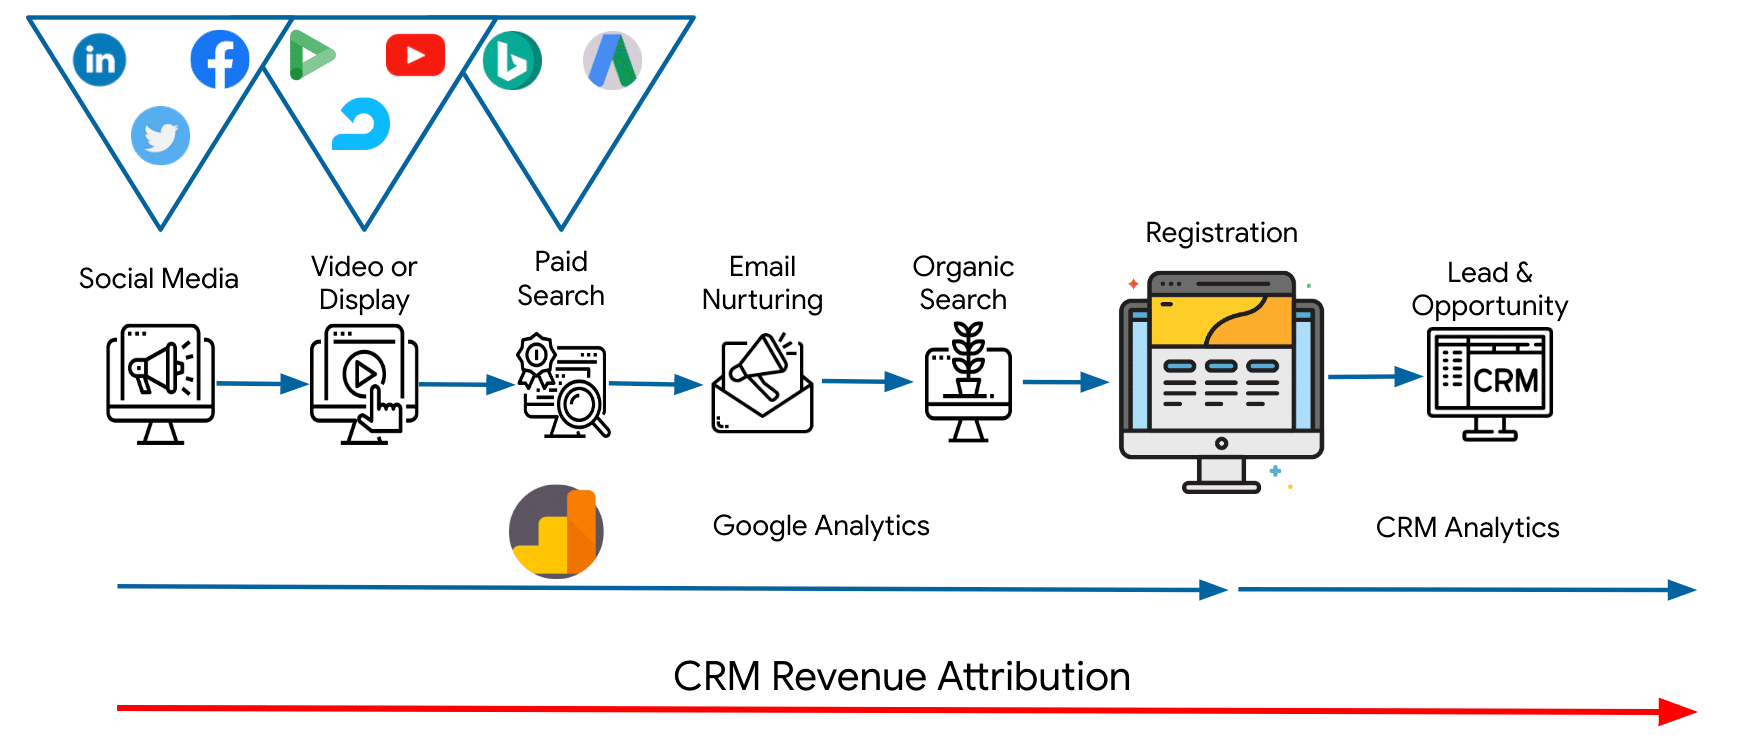 CRM Revenue Attribution 2